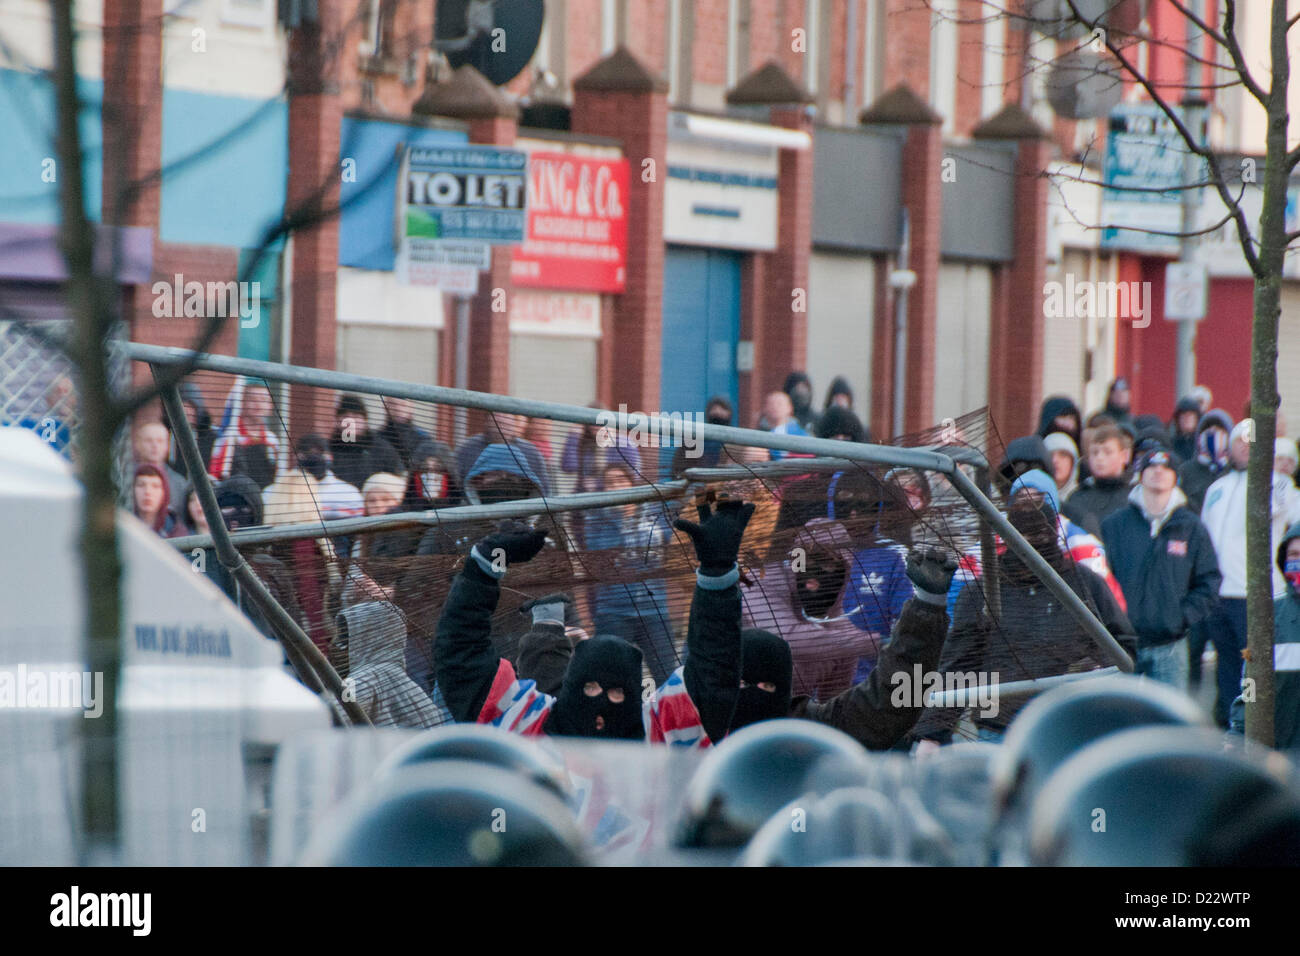 Belfast, UK. 01.12.13.  Loyalist Jugendliche Gebrauch bricht Metall Barriere gegen Polizei als Ausschreitungen in Belfast Borough von Castlereagh...  © Pete Maclaine / Alamy Live News Stockfoto